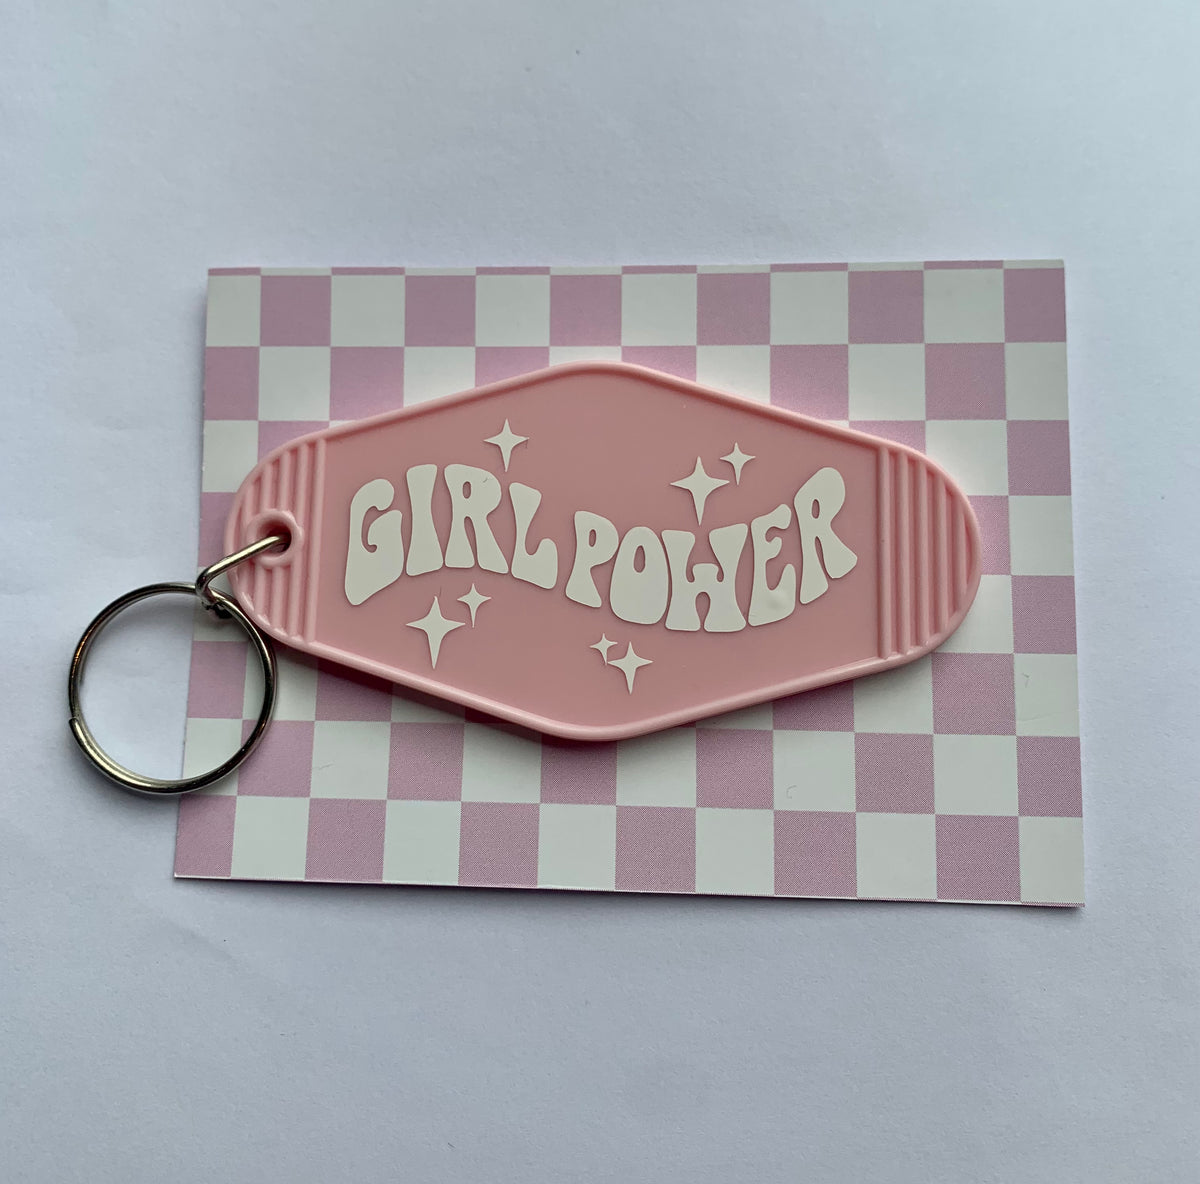 Retro Motel Keychain 'Girl Power'- WHITE